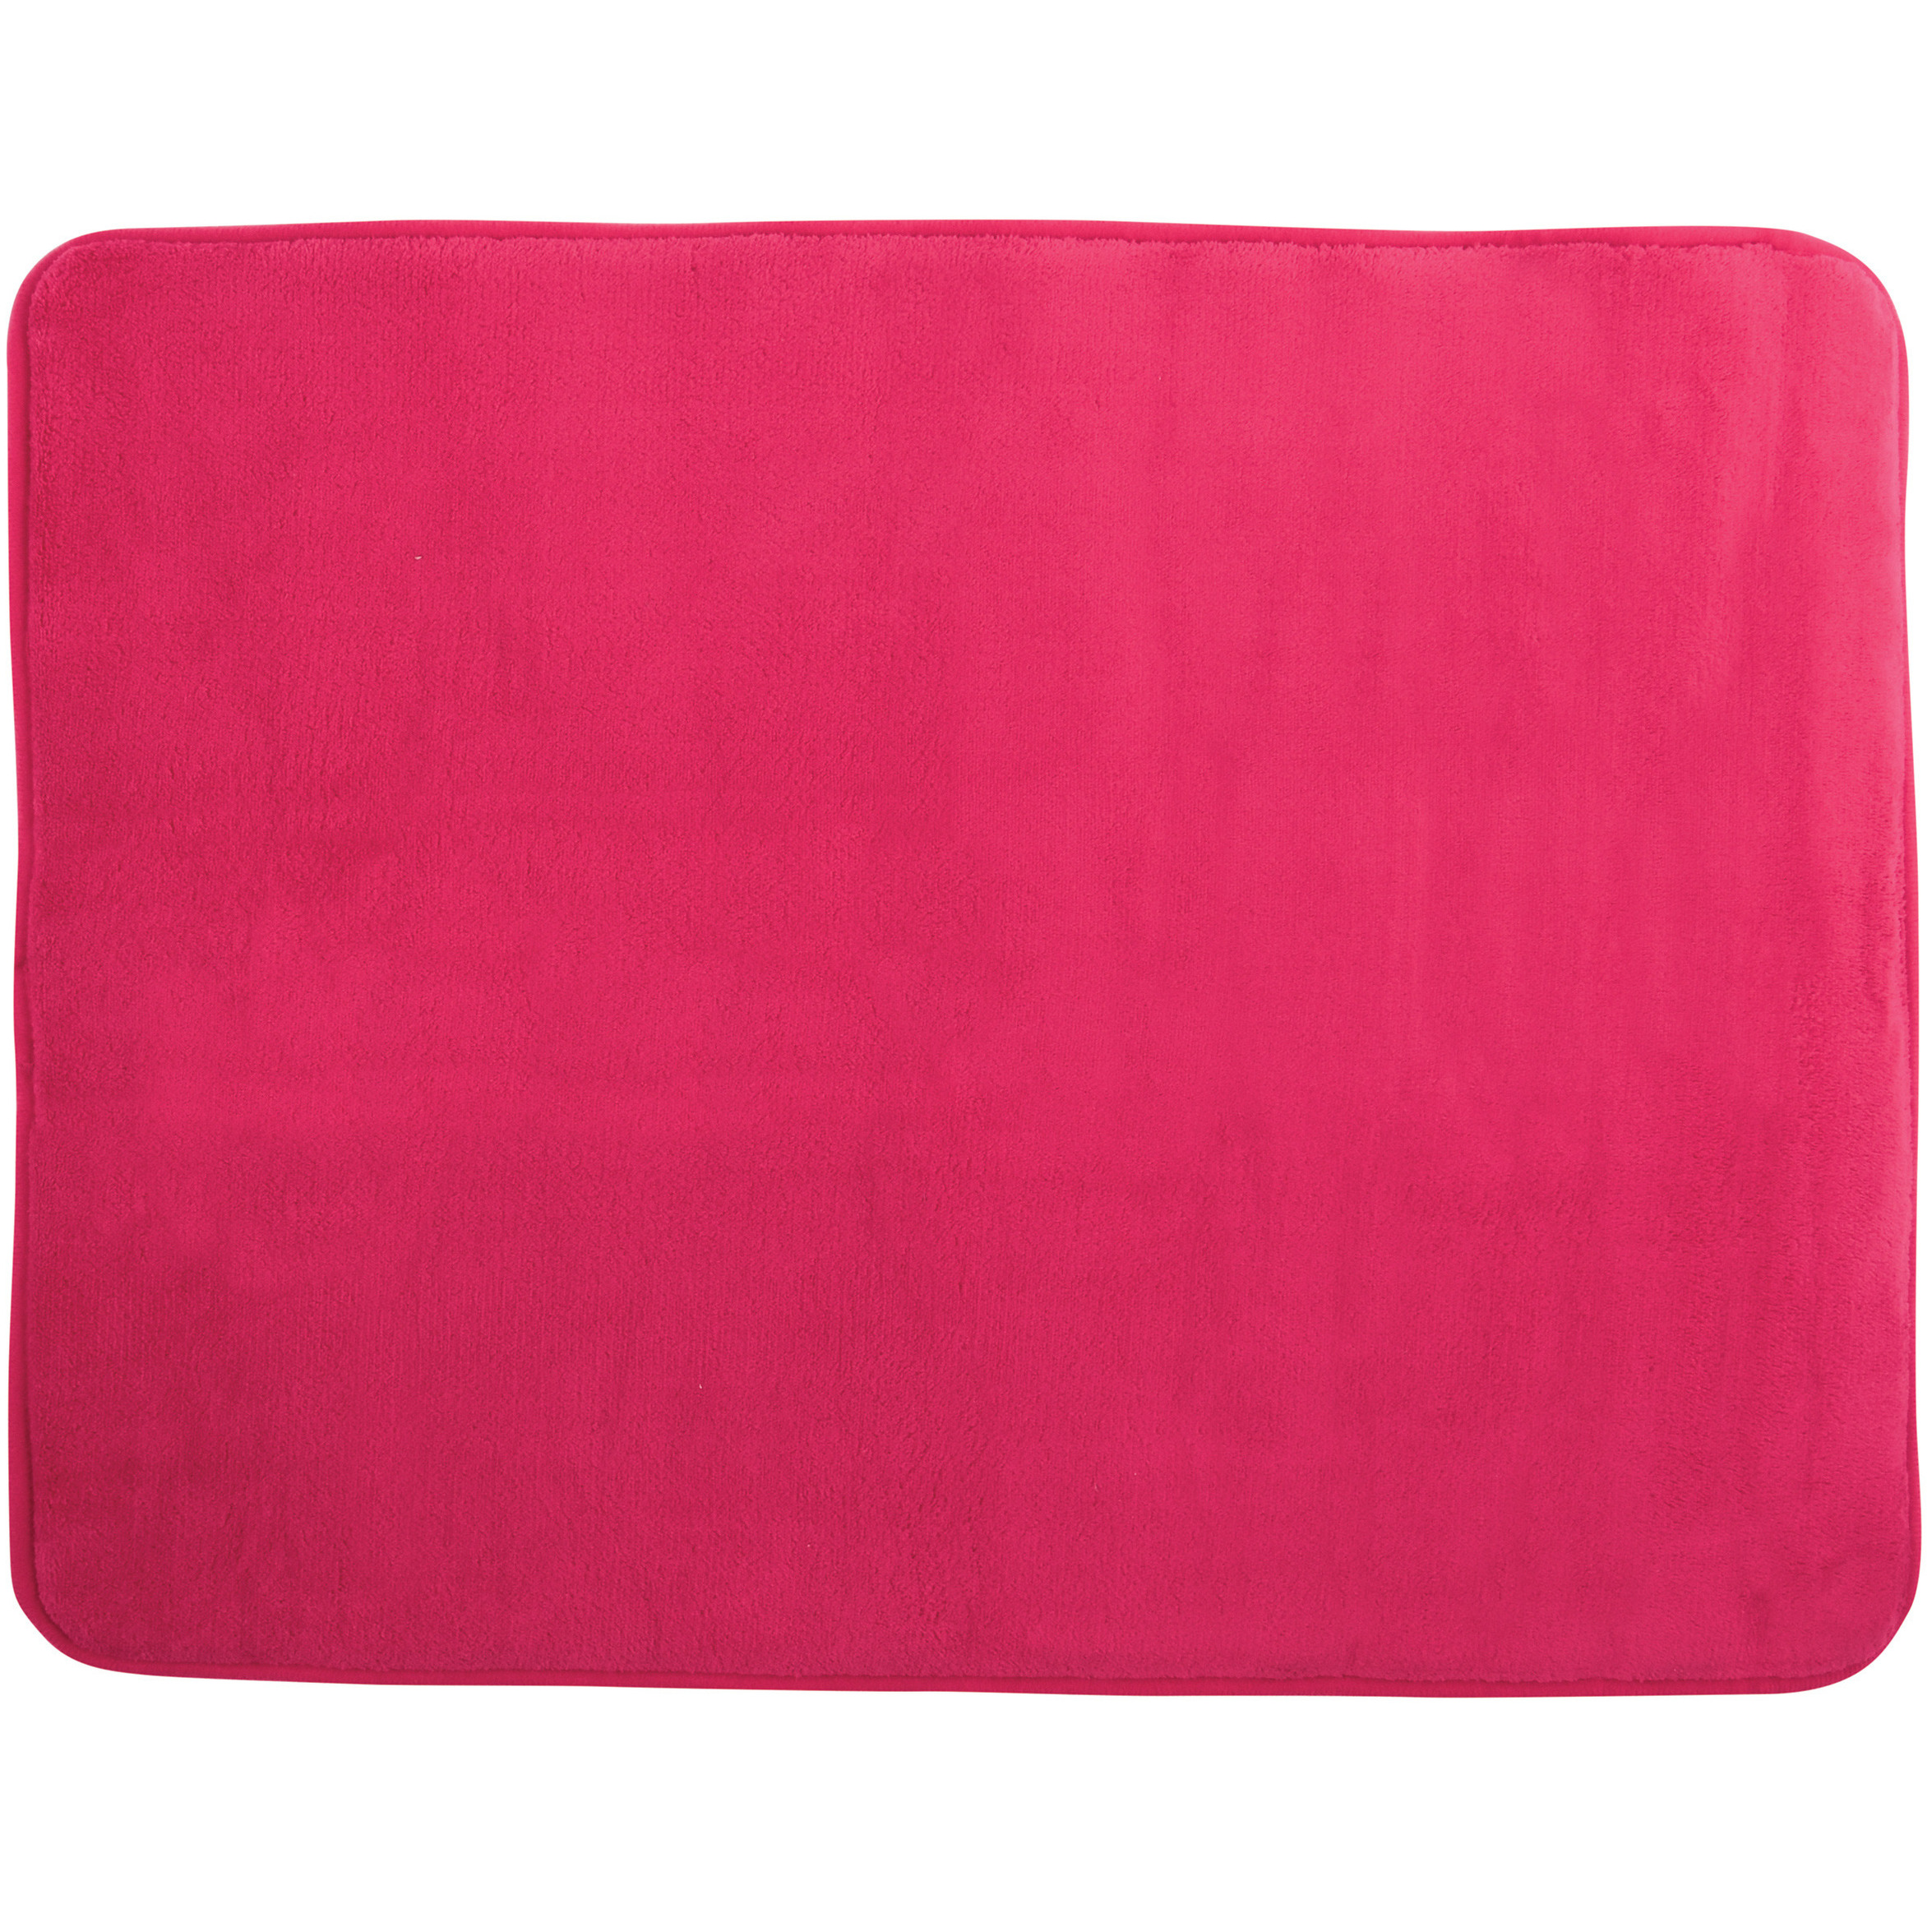 Badkamerkleedje-badmat tapijt voor op de vloer fuchsia roze 50 x 70 cm